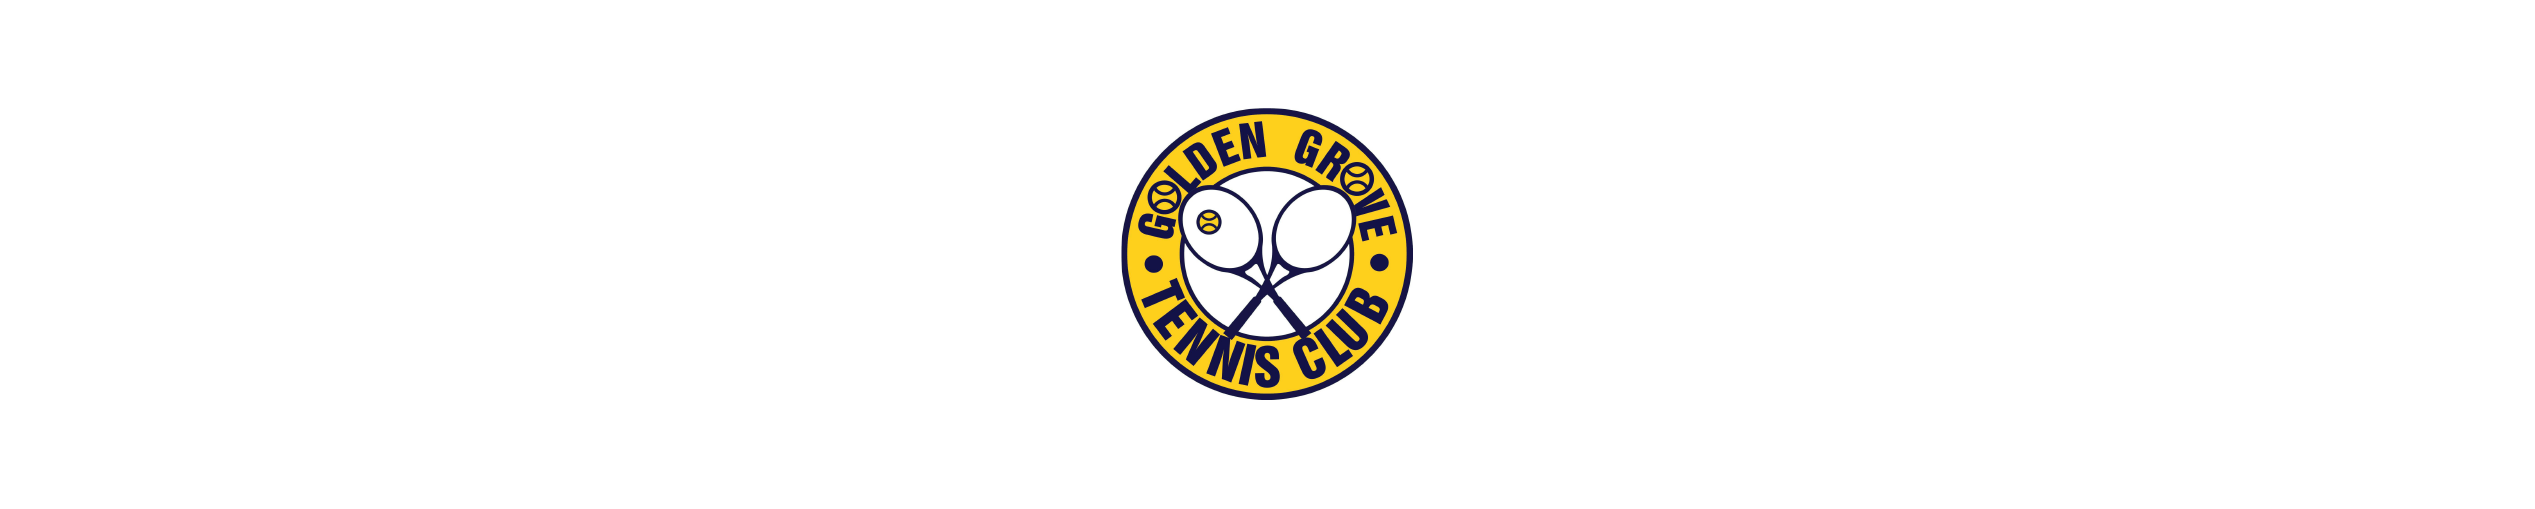 GOLDEN GROVE TENNIS CLUB